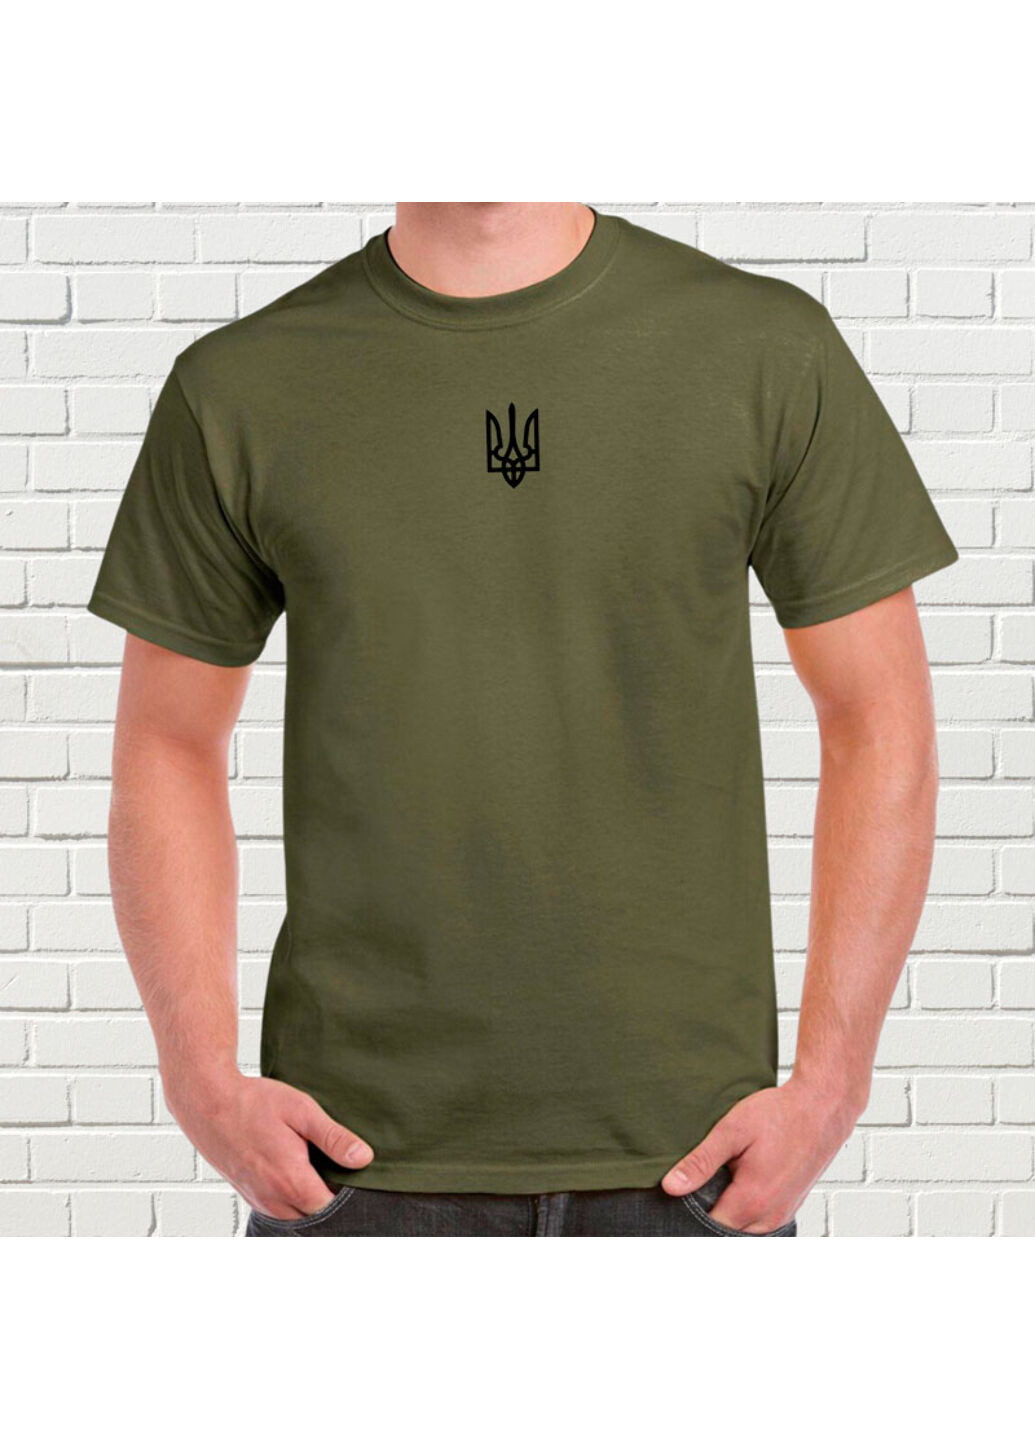 Хакі (оливкова) футболка з вишивкою чорного тризуба чоловіча millytary green s No Brand